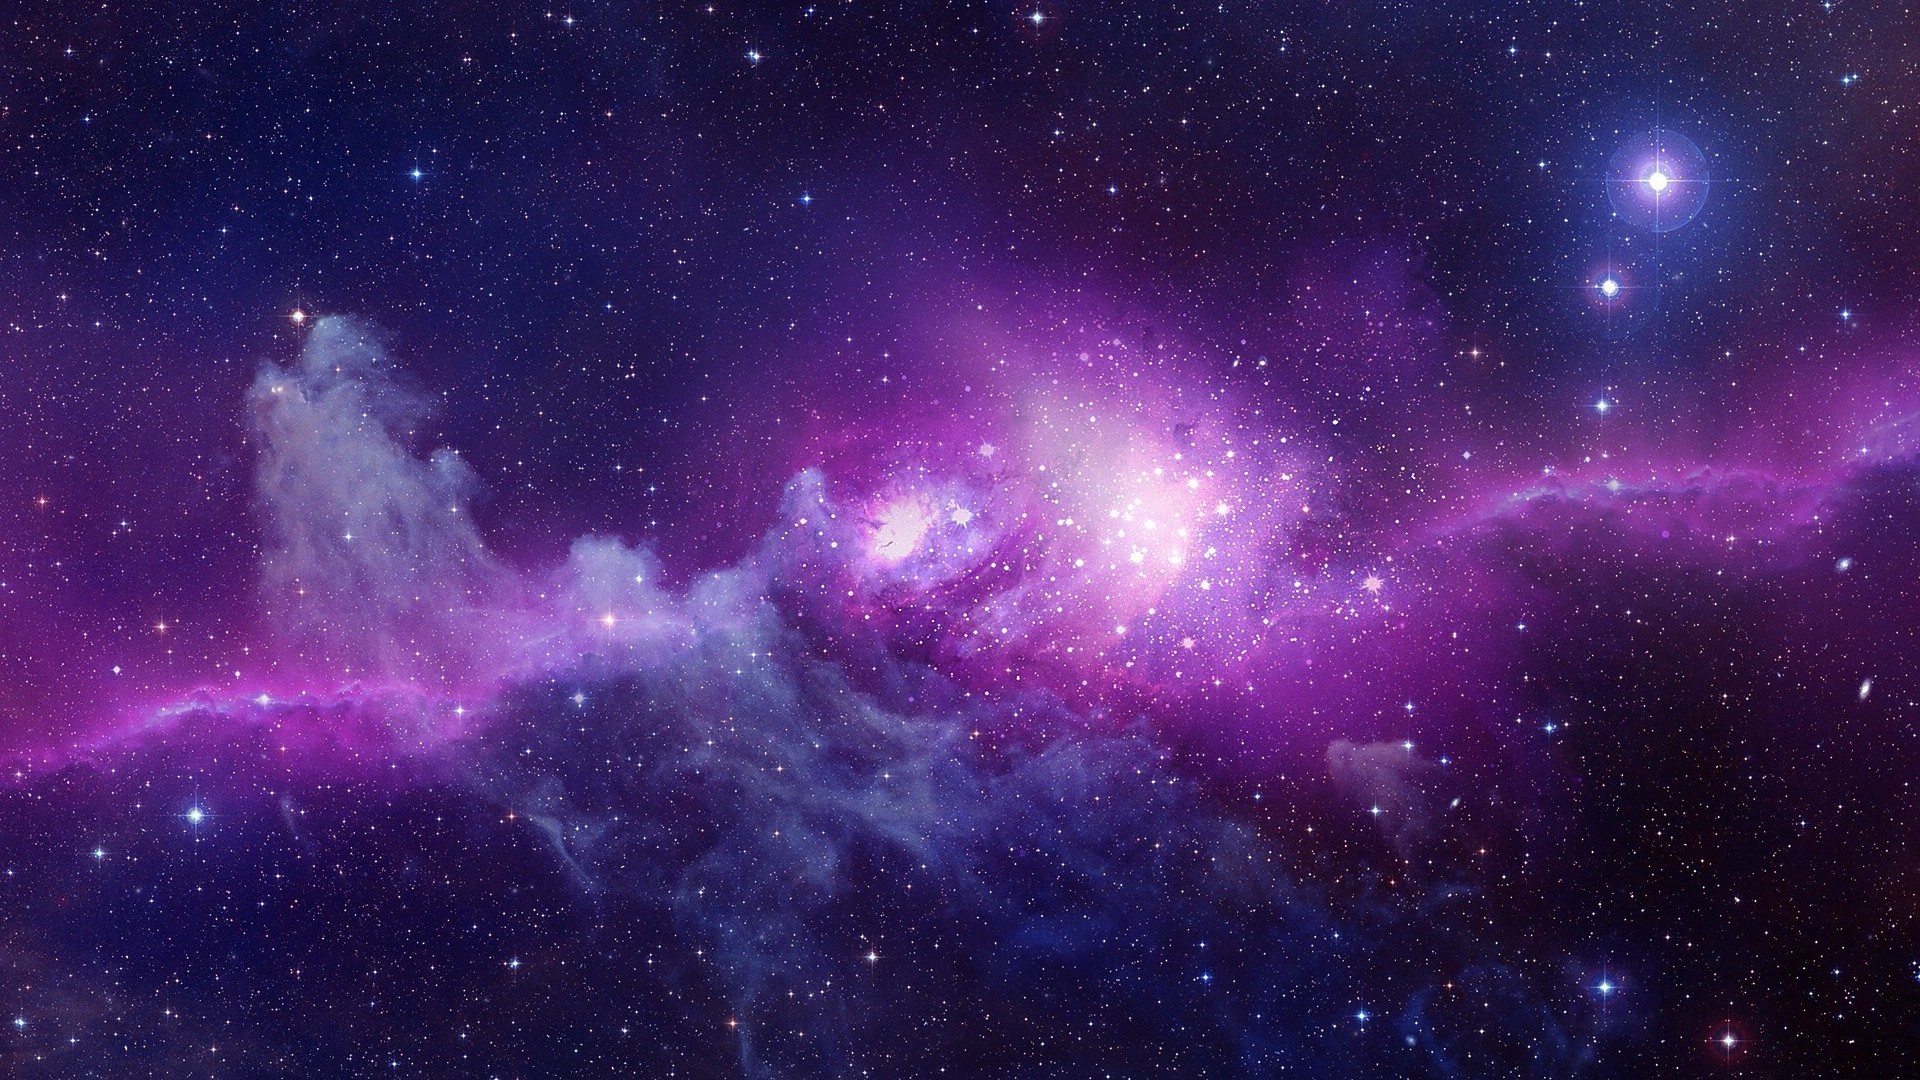 Hình nền thiên hà là một sự lựa chọn hoàn hảo để trang trí cho chiếc điện thoại của bạn. Với màu sắc đậm của các thiên hà và sao trên nền đen, hình nền này sẽ mang đến cho bạn một vẻ đẹp đầy mê hoặc và phong phú của vũ trụ.